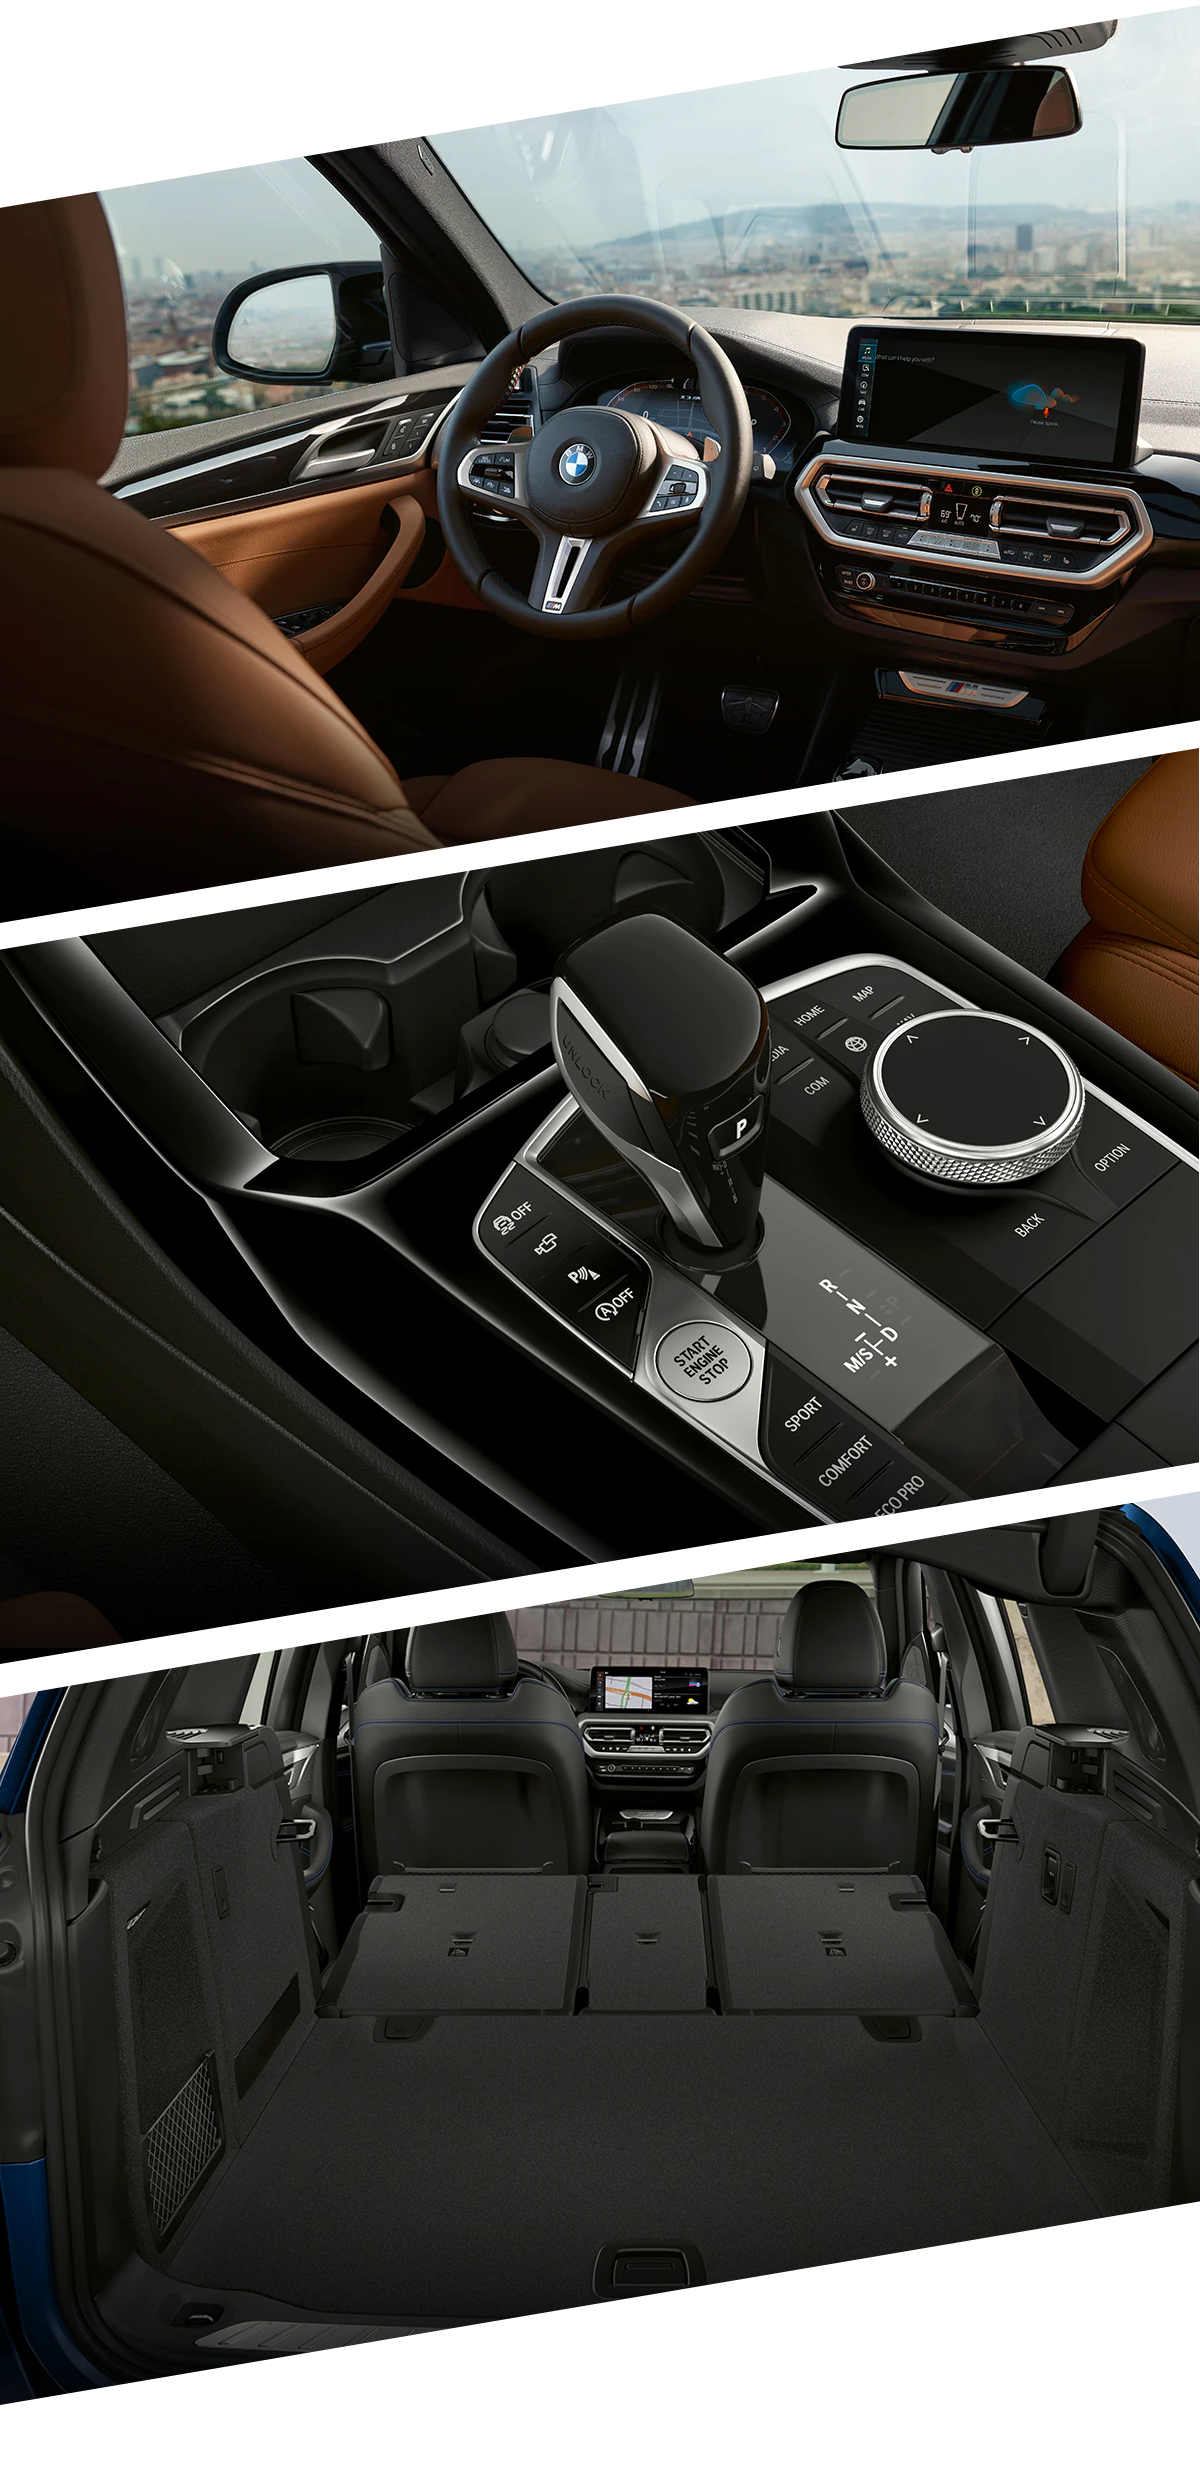 2022 BMW X3 Interior Images